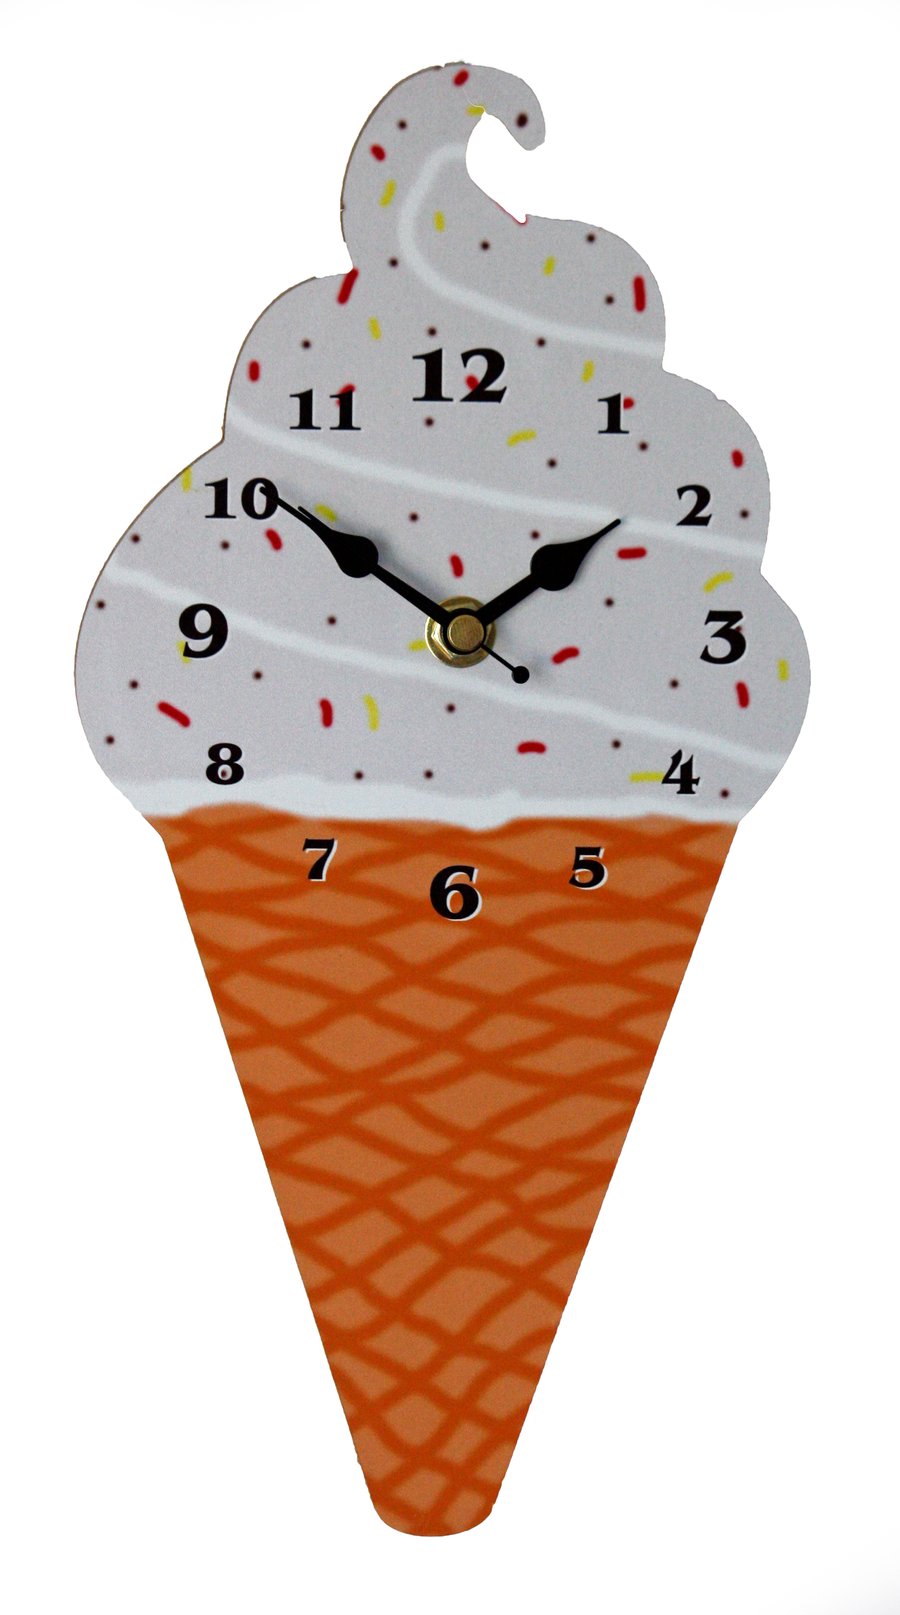 Ice Cream Cone Wall Clock